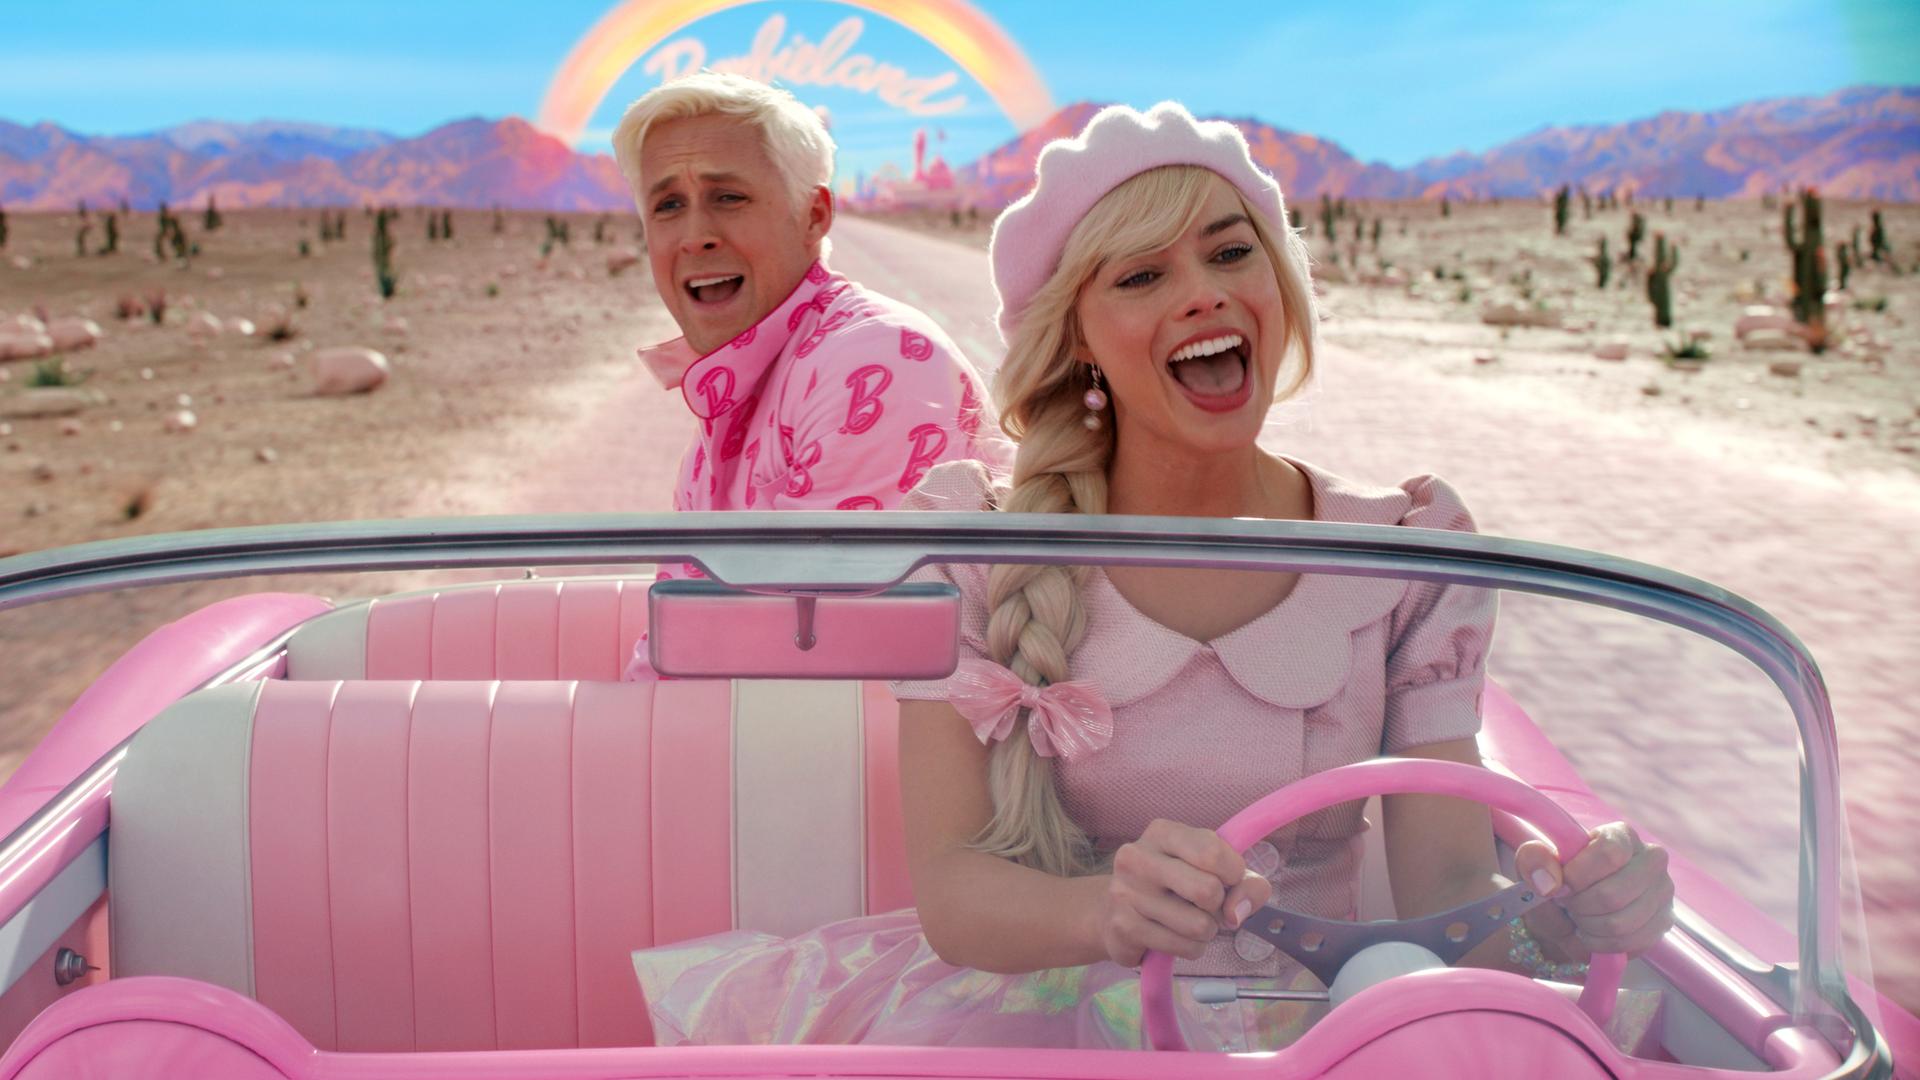 Szene aus dem Film Barbie, in dem Barbie und Ken in einem pinken Cabrio fahren.